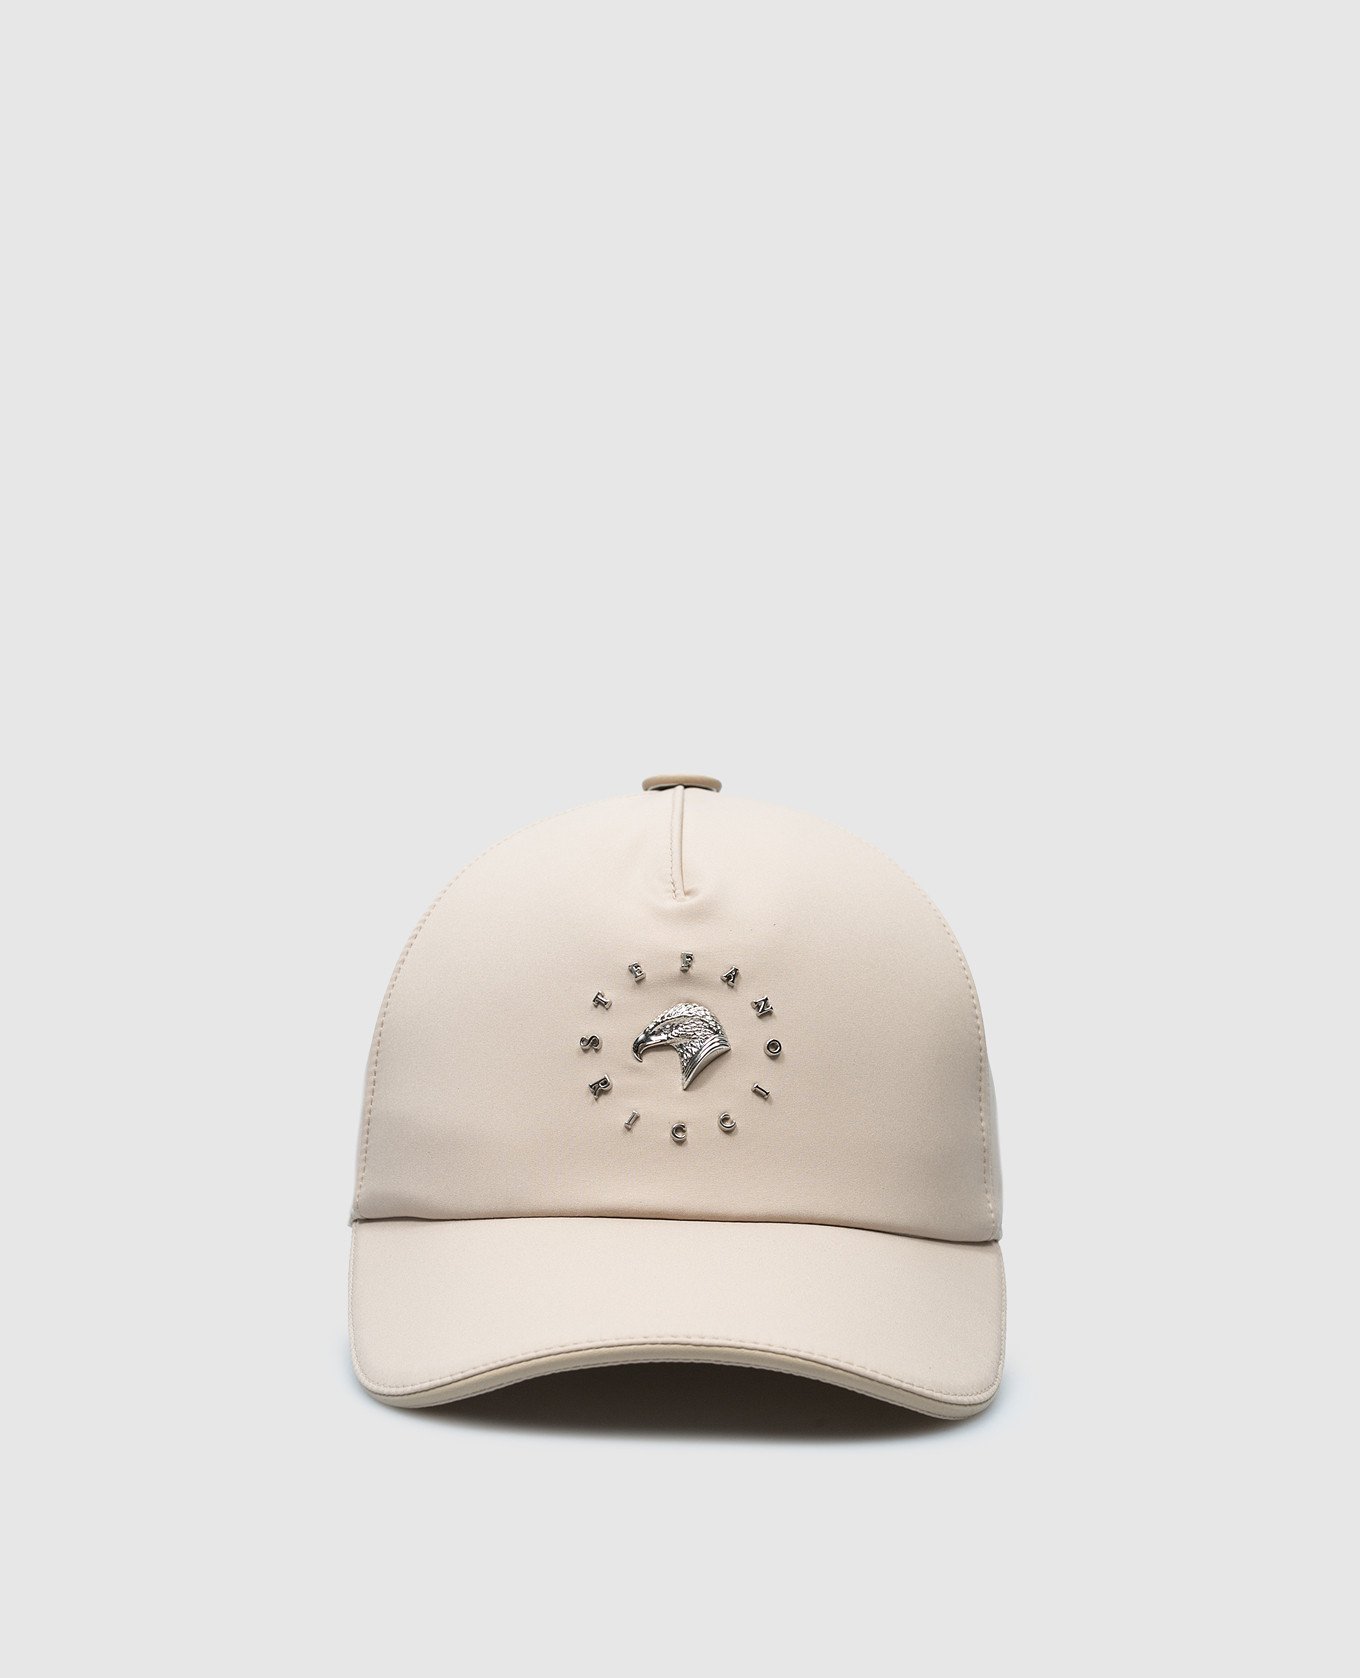 Beige cap with metal logo